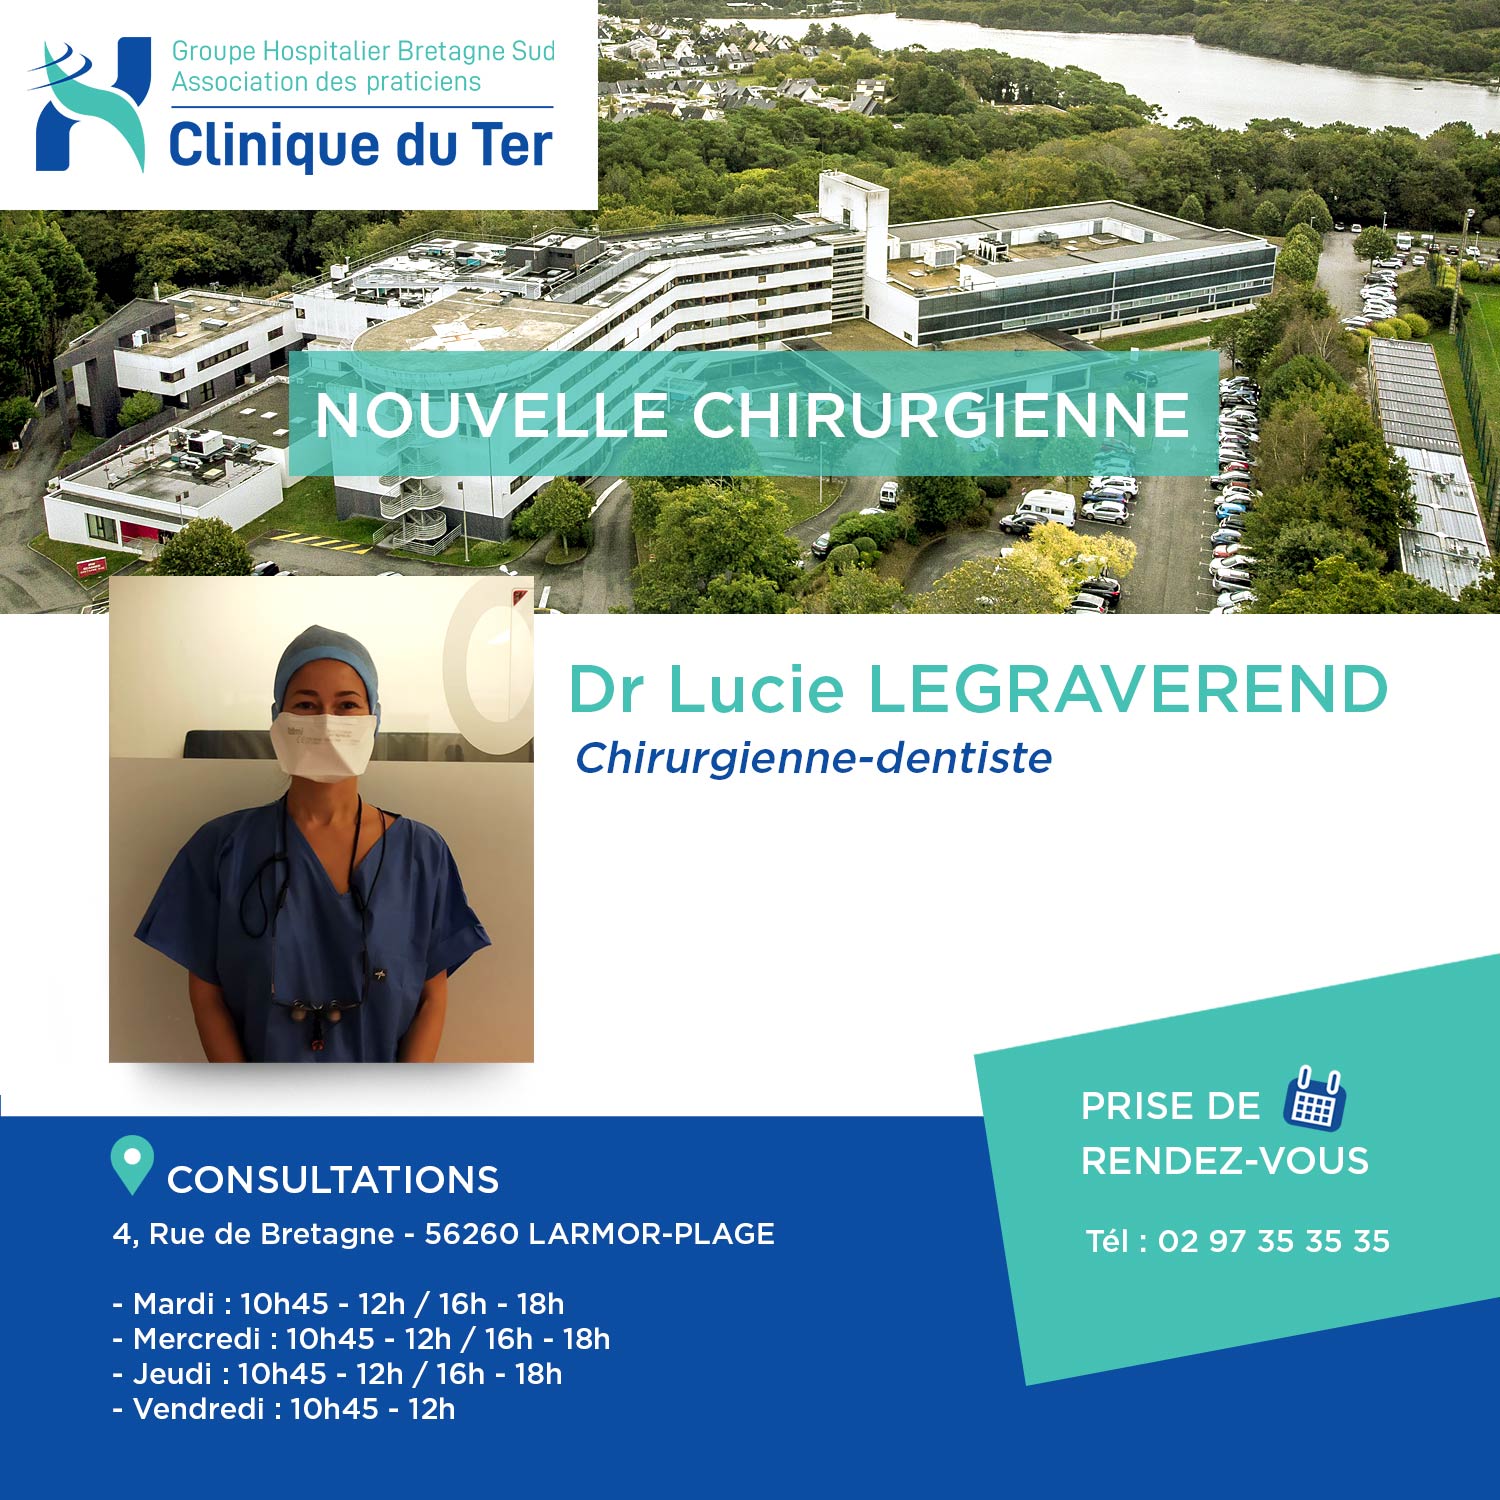 La Clinique du Ter souhaite la bienvenue au Dr. LEGRAVEREND